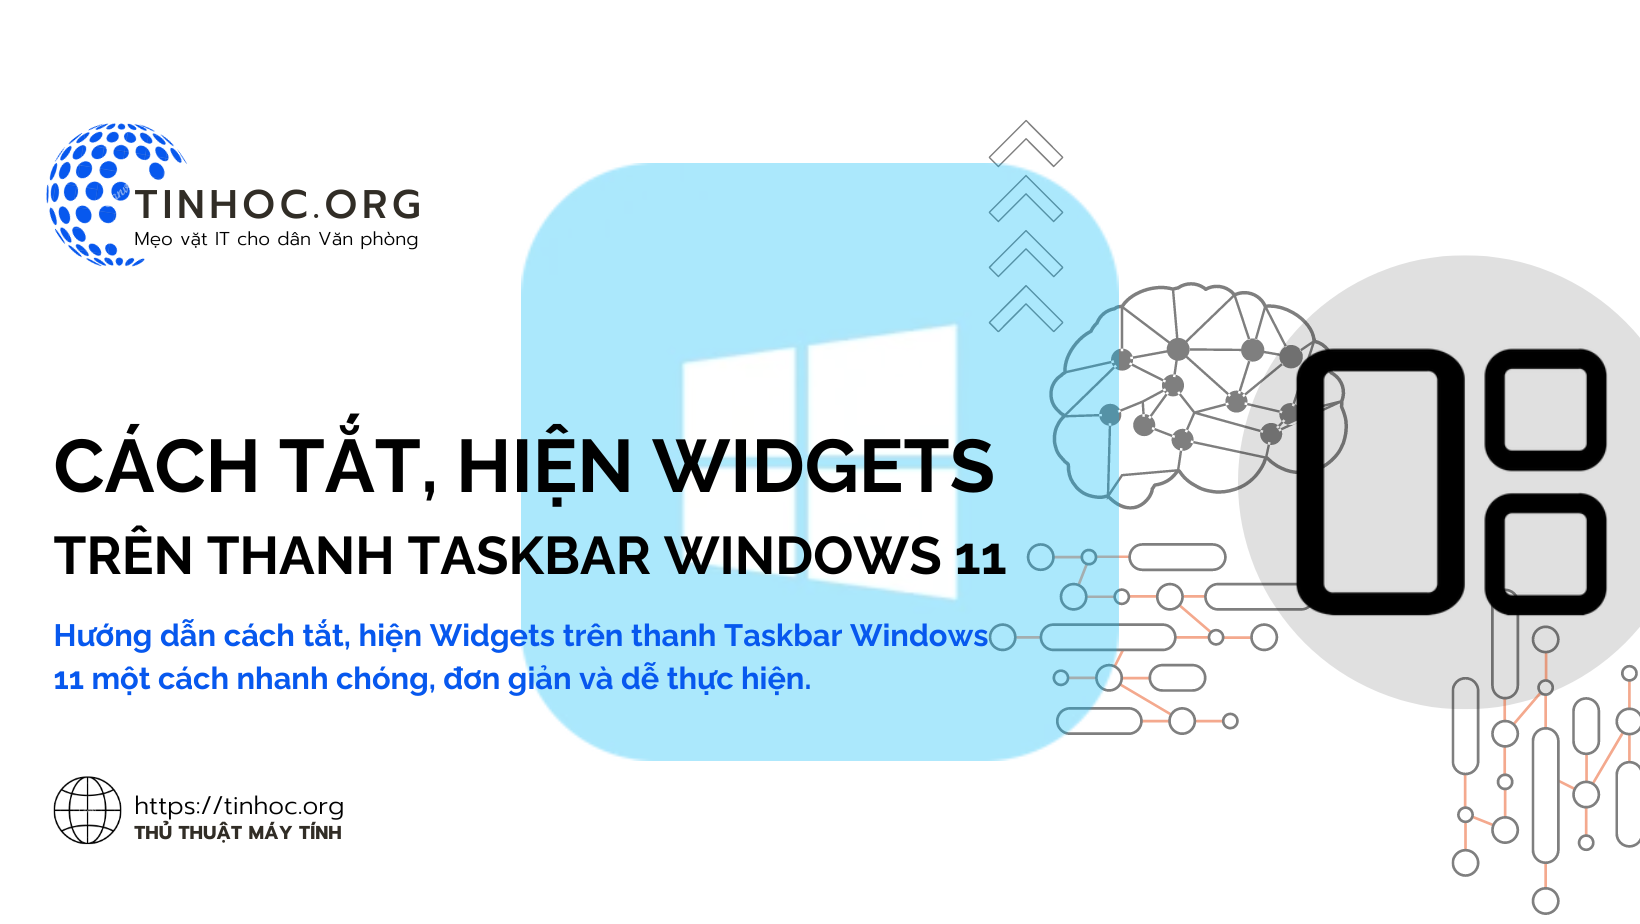 Hướng dẫn cách tắt, hiện Widgets trên thanh Taskbar Windows 11 một cách nhanh chóng, đơn giản và dễ thực hiện.